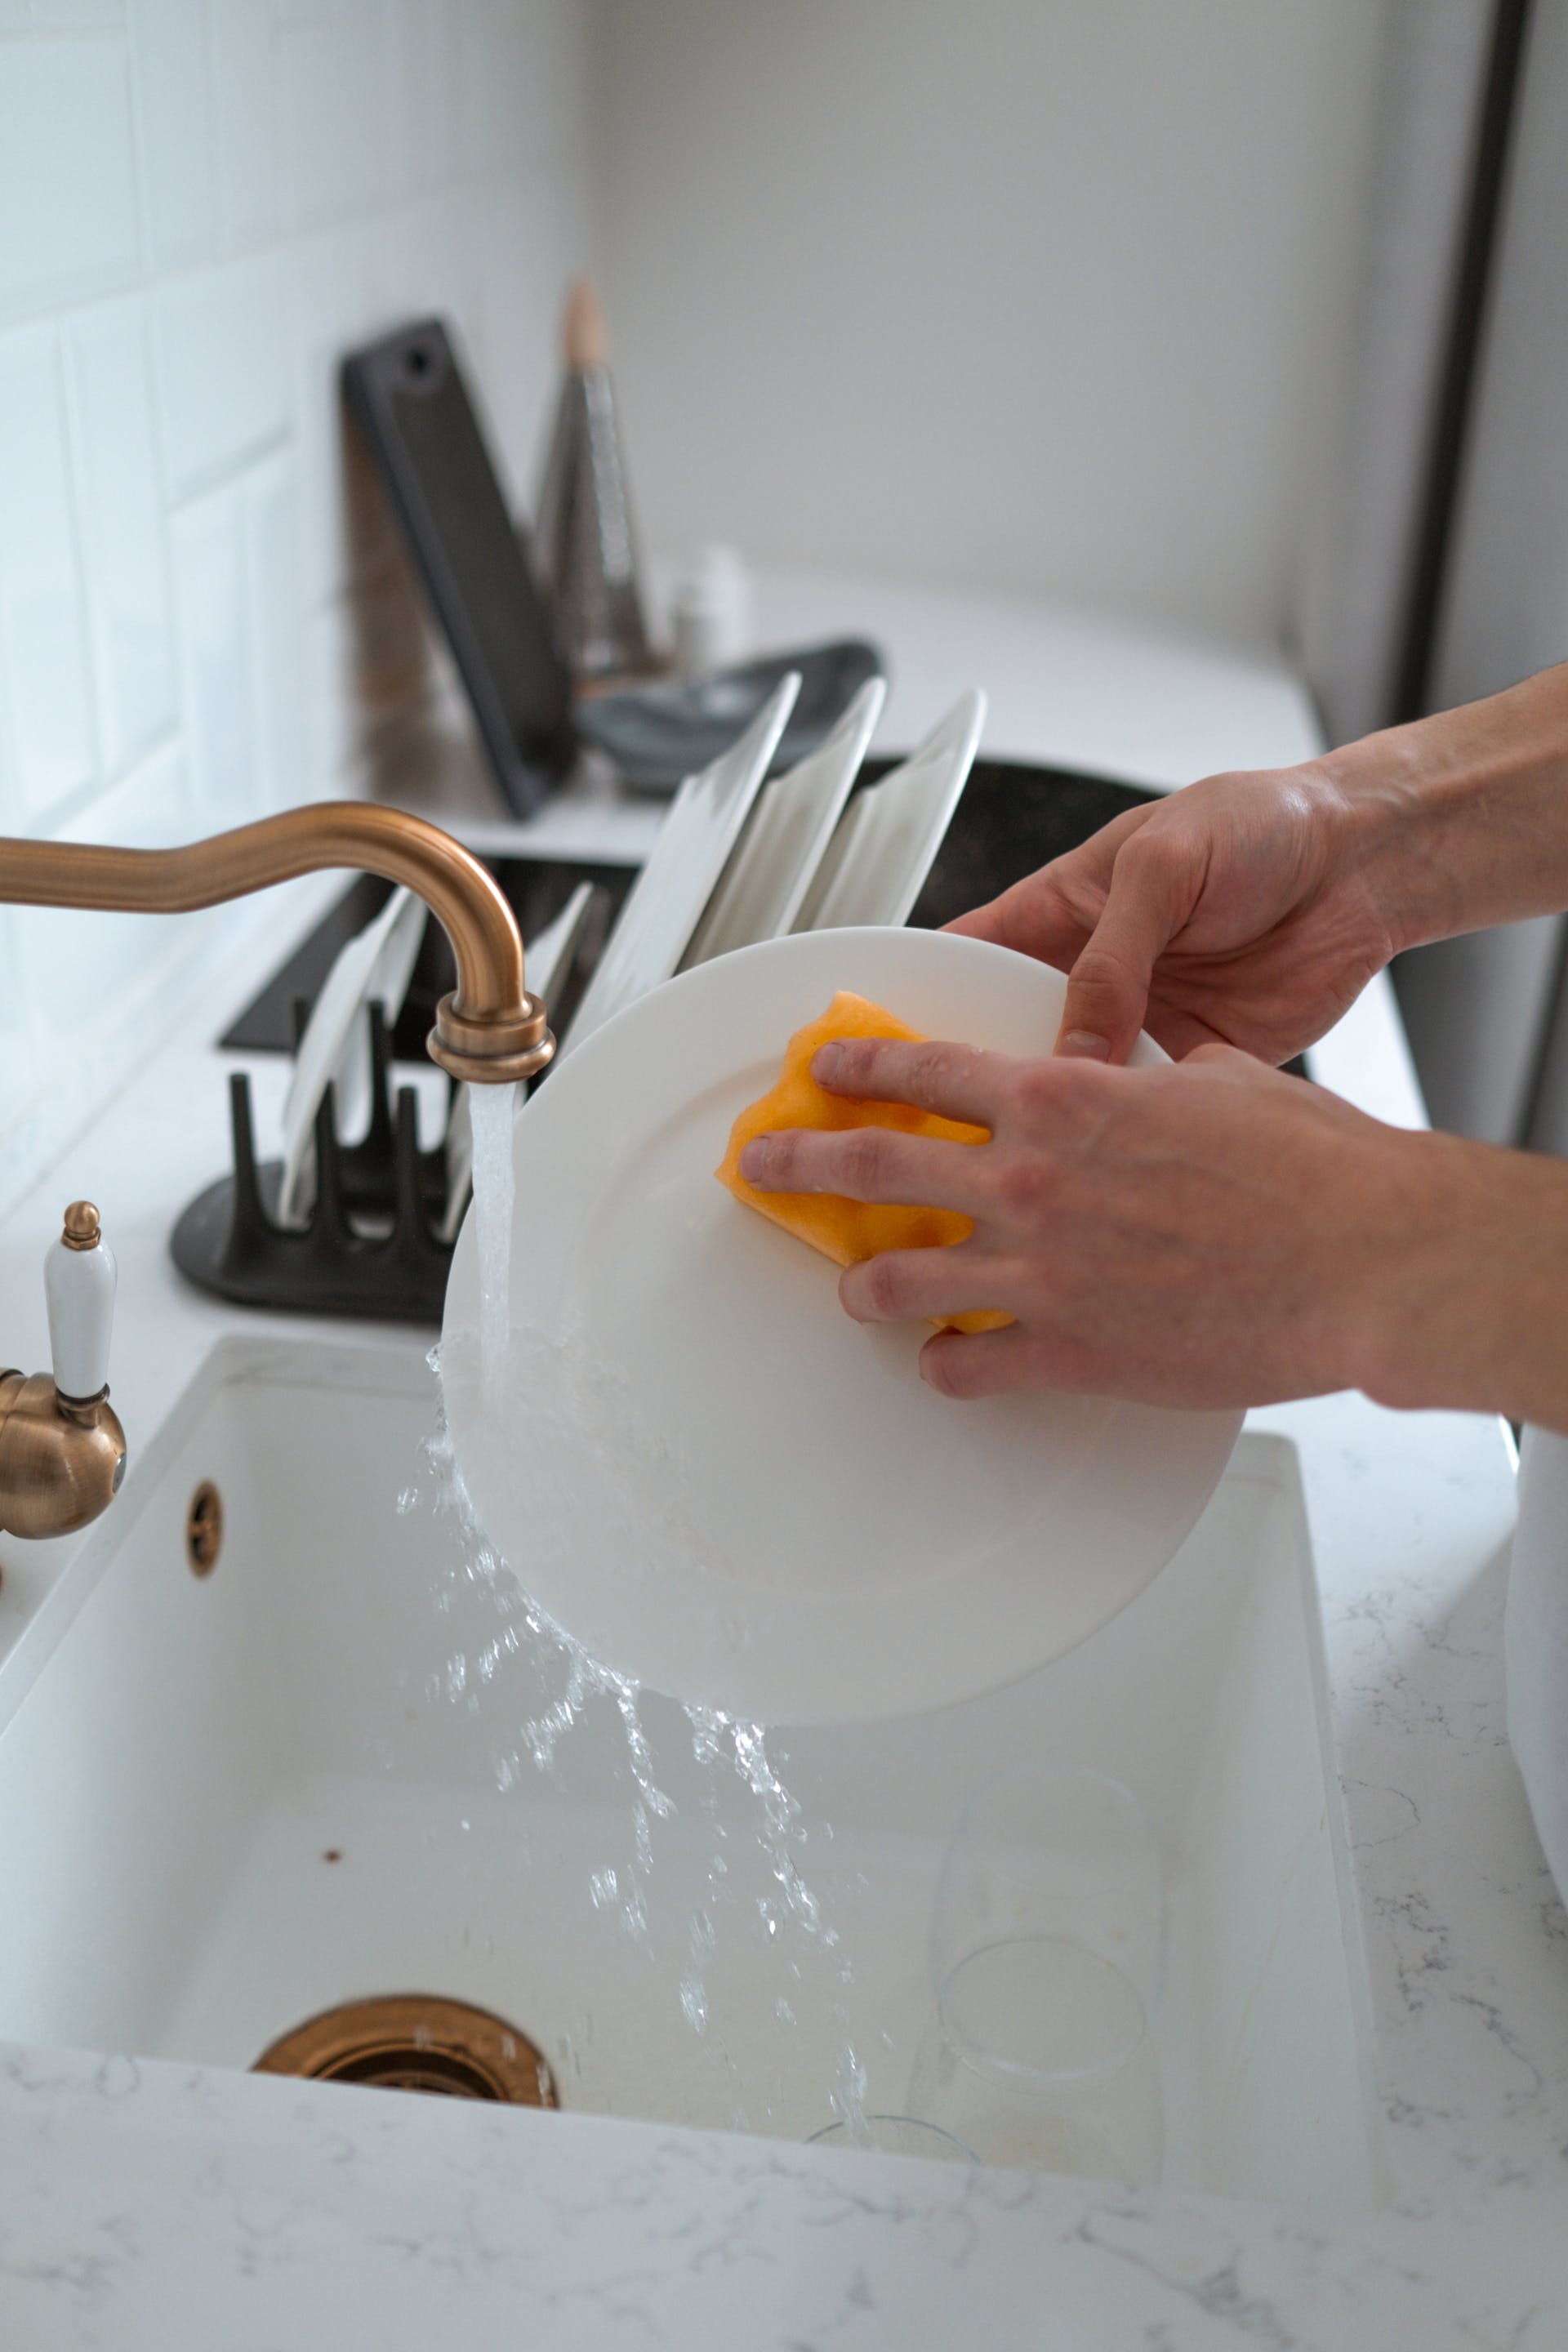 Personne faisant la vaisselle | Source : Pexels